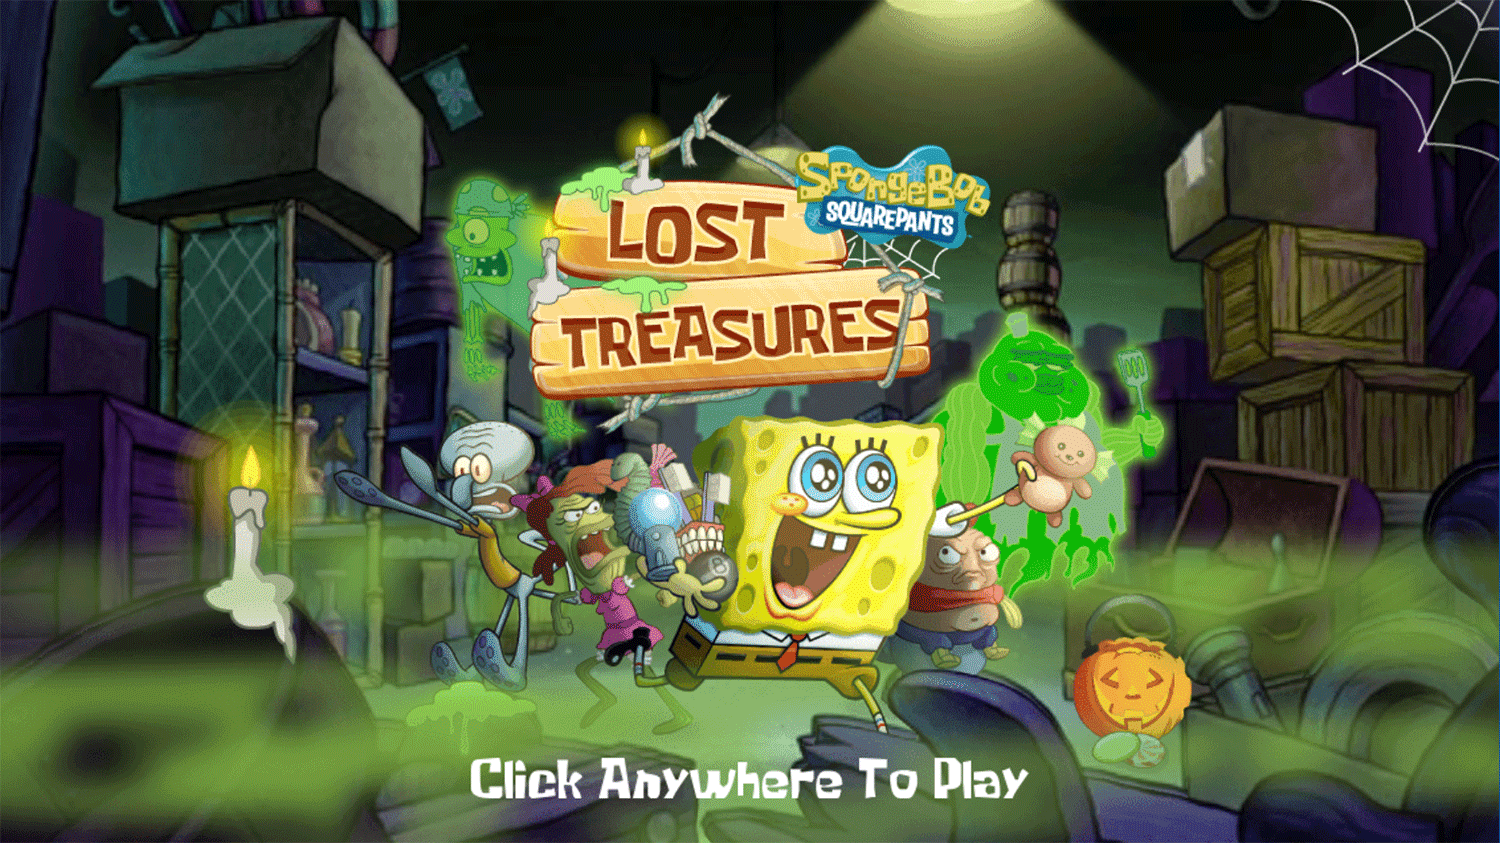 Spongebob Squarepants Lost Treasures Welcome Screen Screenshot.